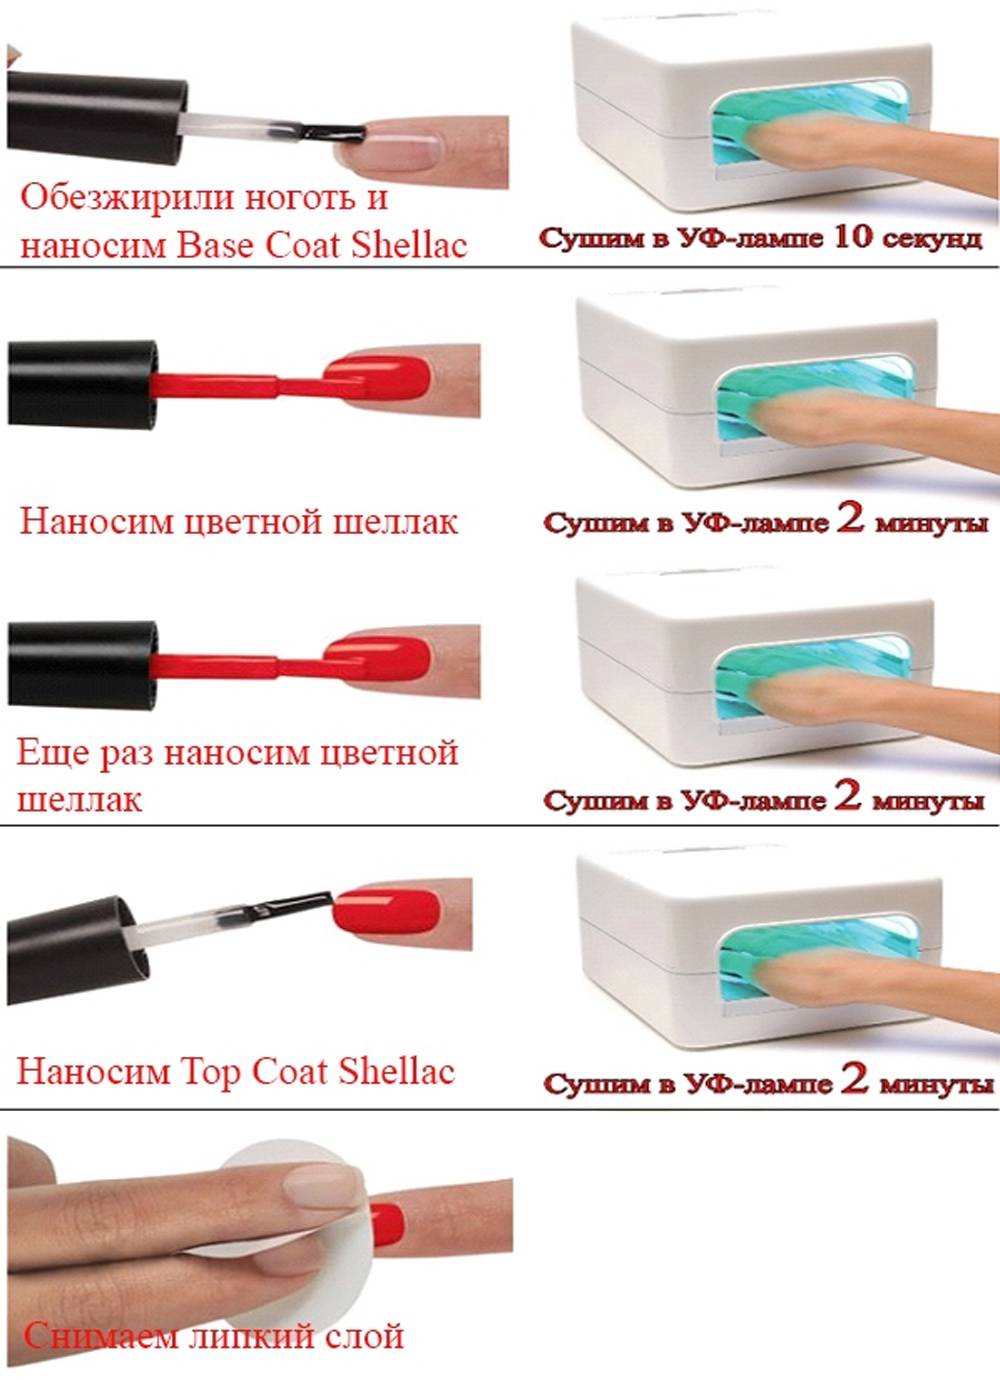 О стемпинге для ногтей: как пользоваться с гель лаком - пошаговая инструкция